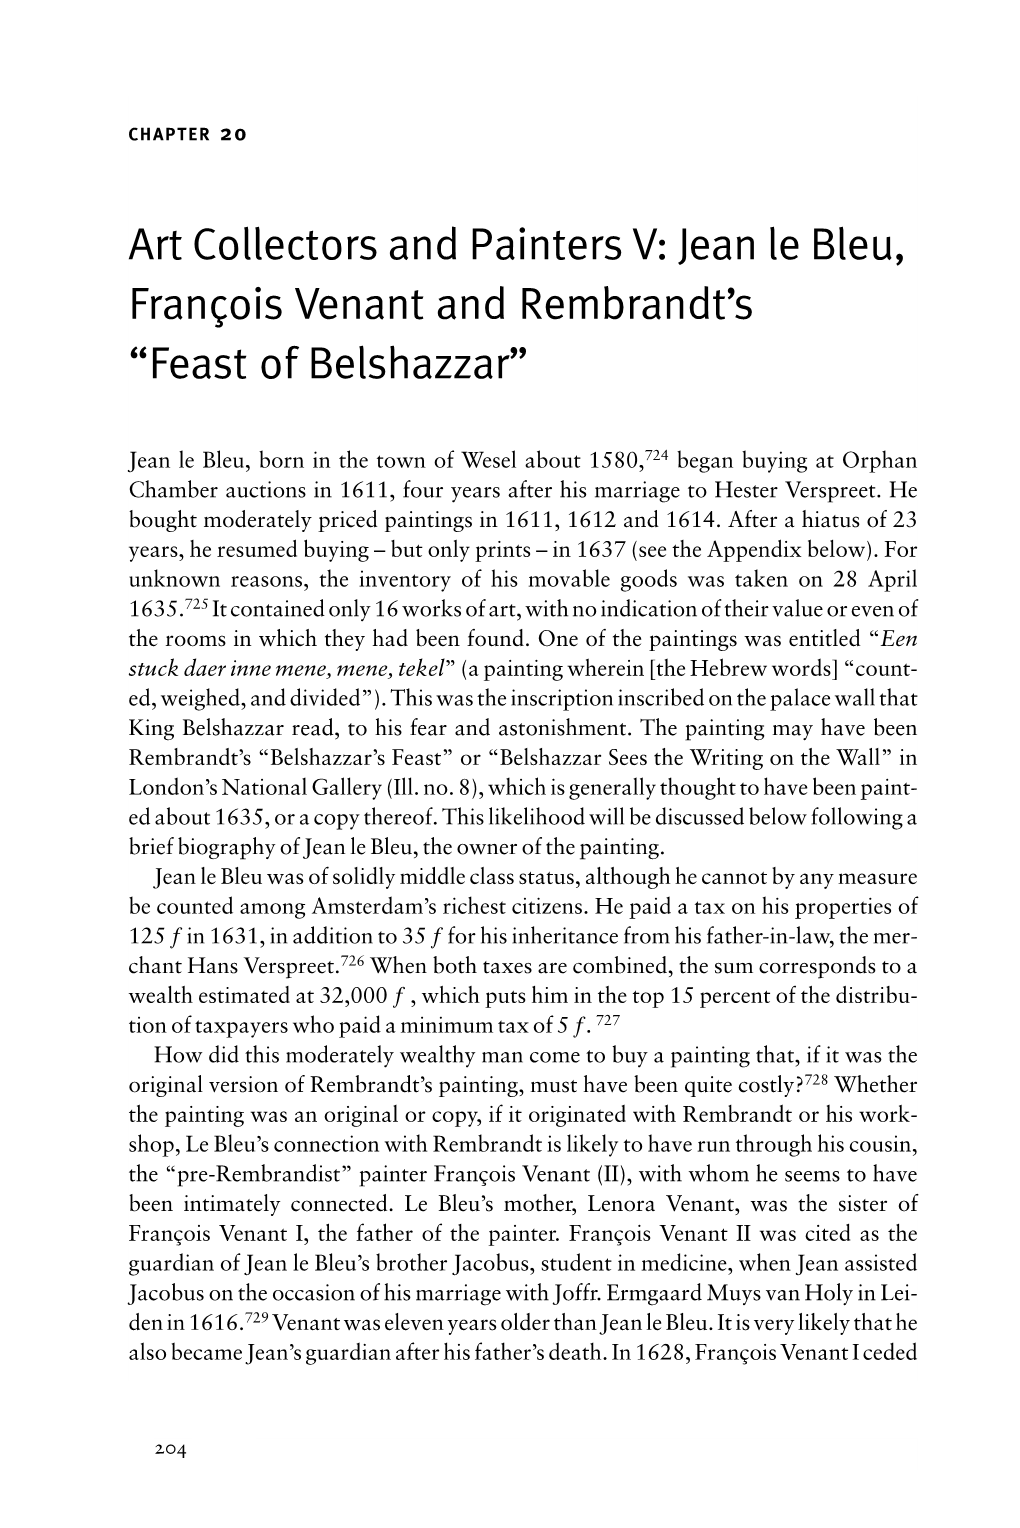 Jean Le Bleu, François Venant and Rembrandt's